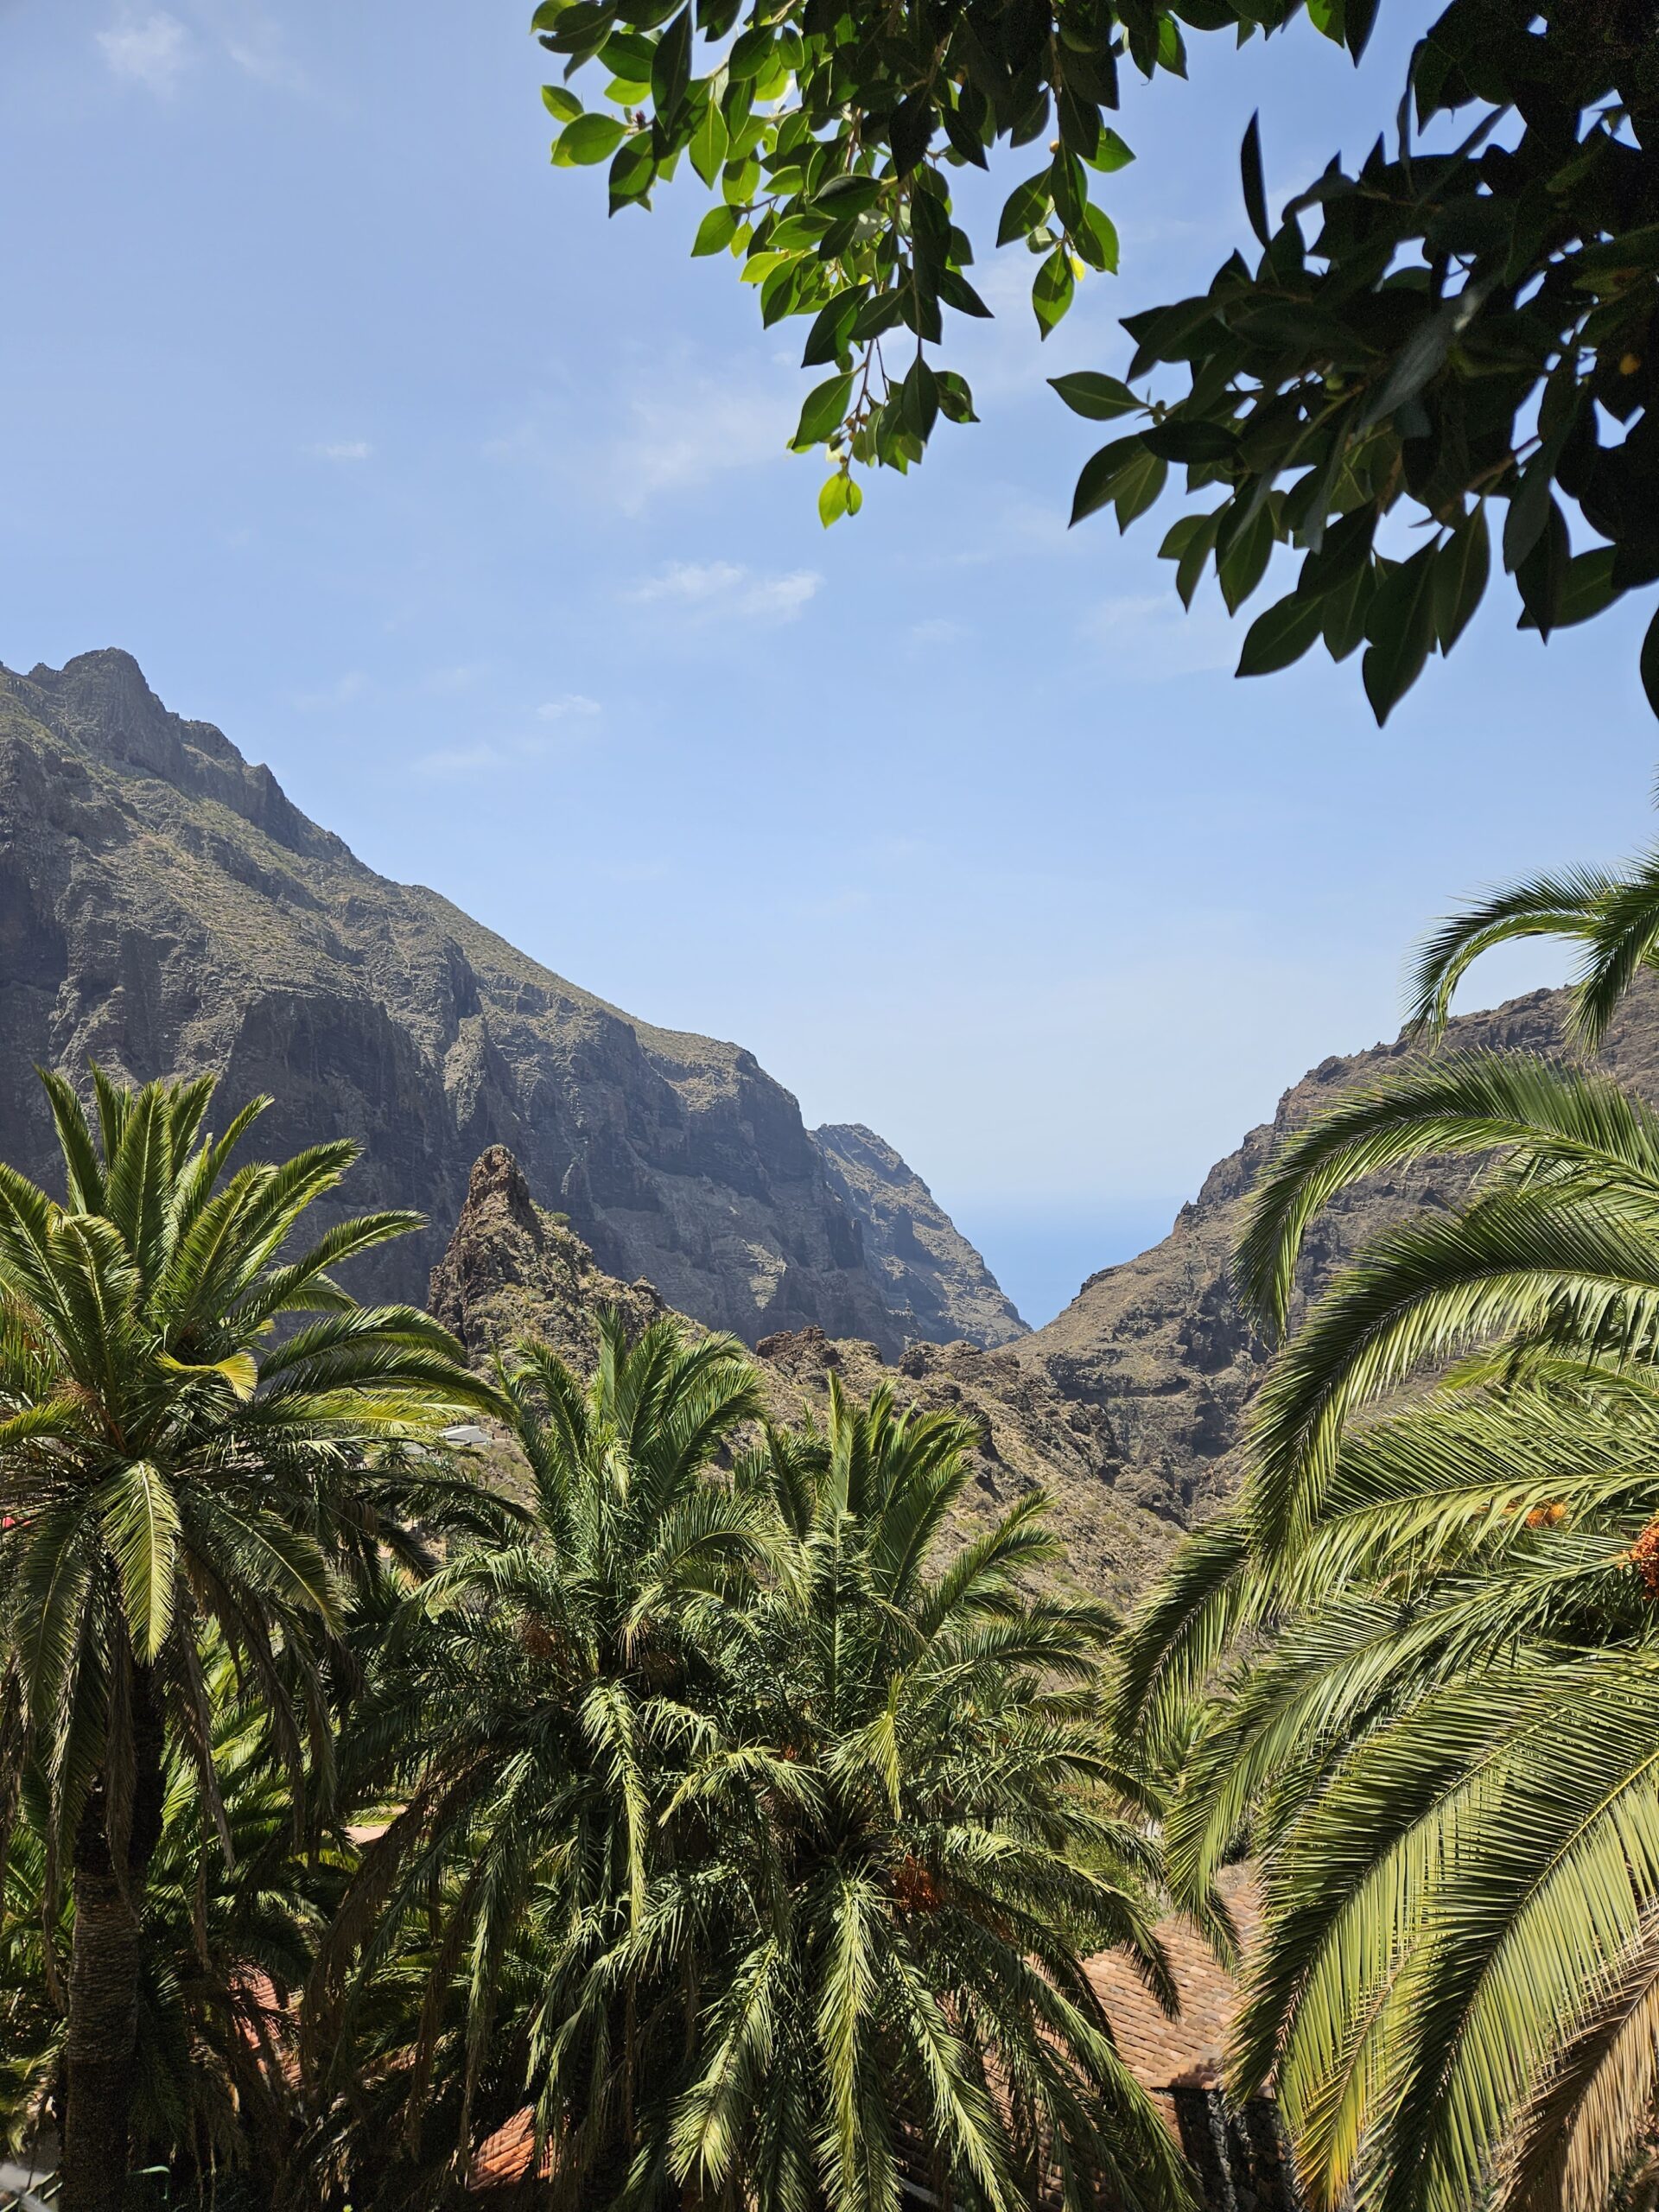 Vakantiefoto met palmbomen en bergen met blauwe lucht